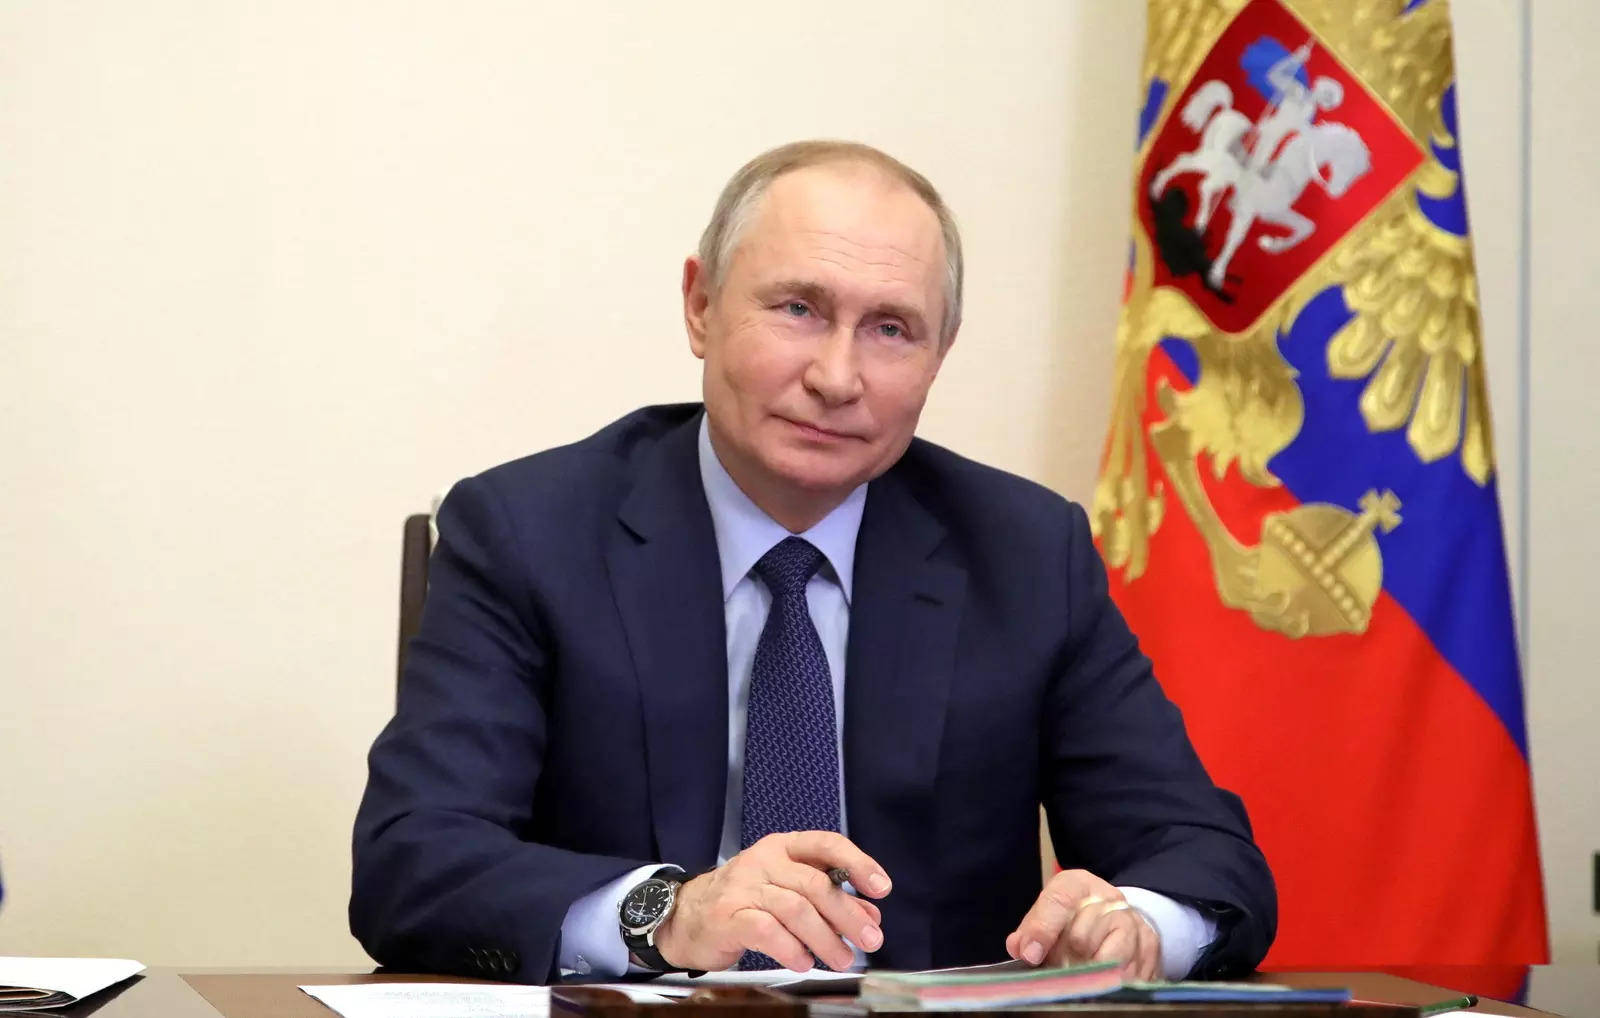 Vladimirputin Lächelt Während Der Konferenz Wallpaper